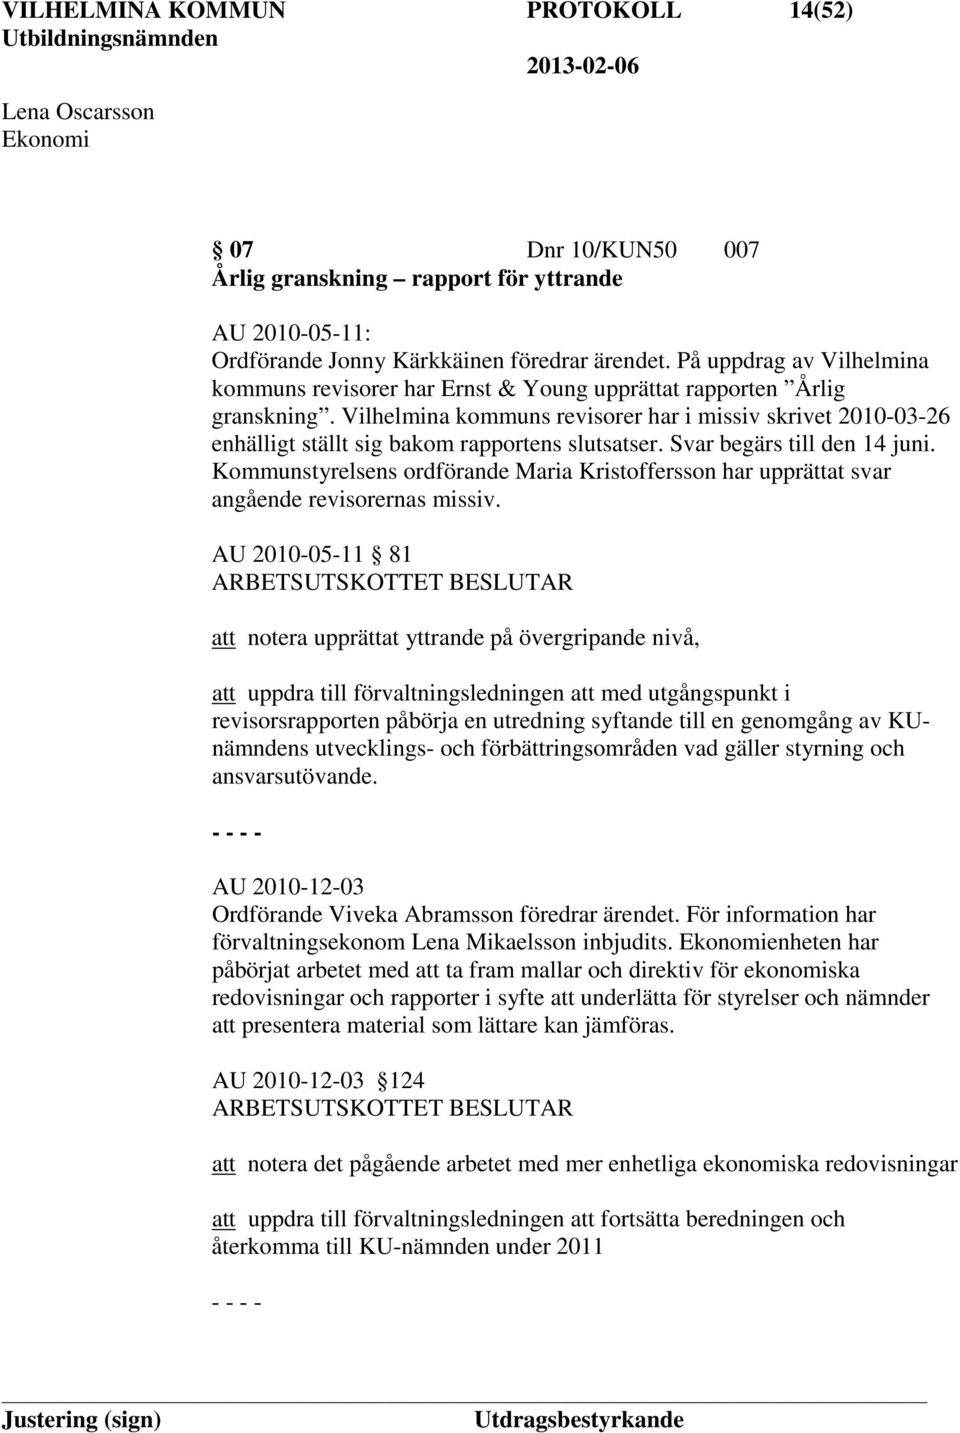 Vilhelmina kommuns revisorer har i missiv skrivet 2010-03-26 enhälligt ställt sig bakom rapportens slutsatser. Svar begärs till den 14 juni.